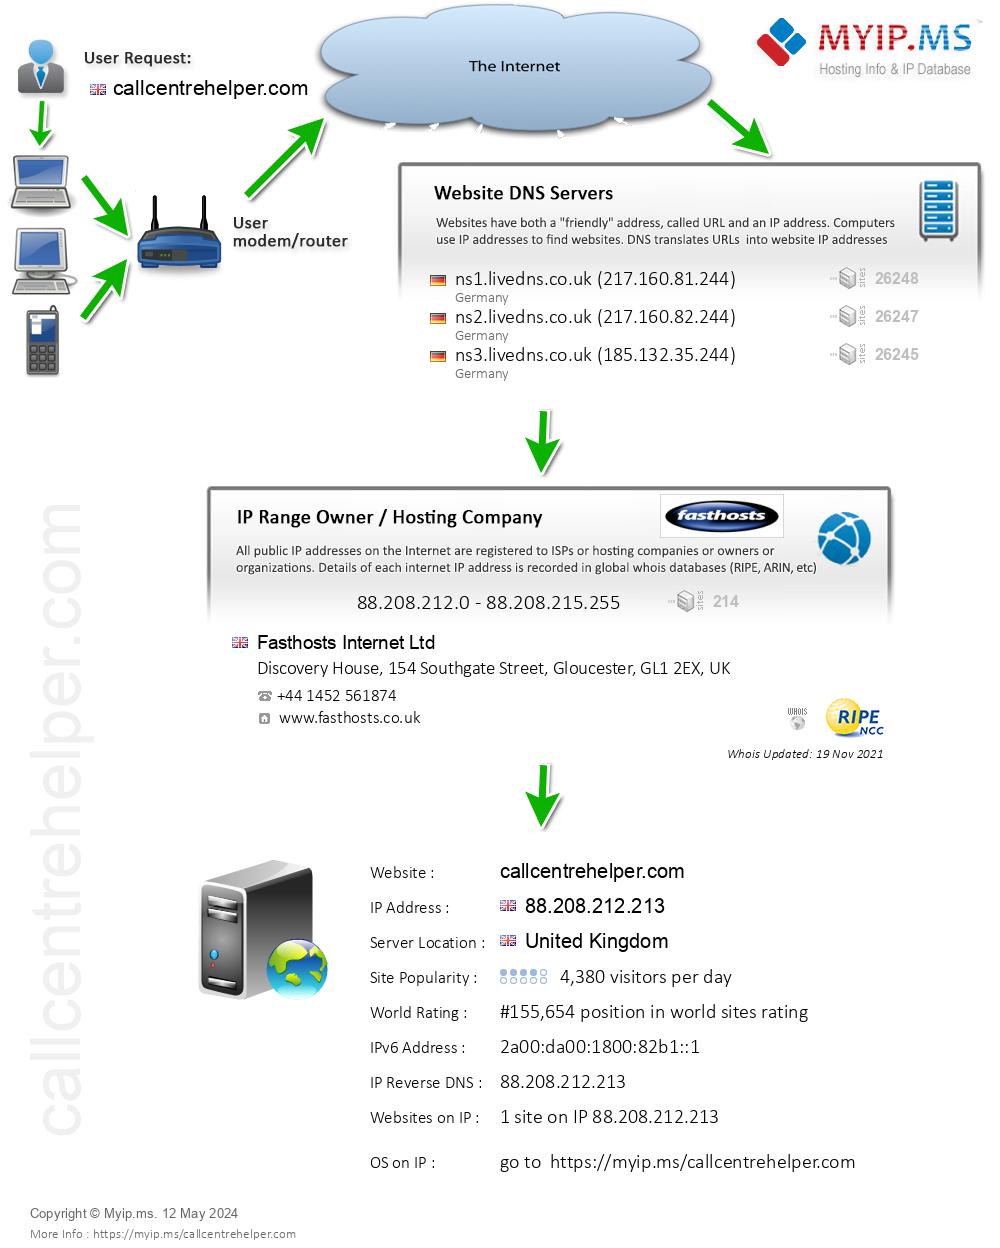 Callcentrehelper.com - Website Hosting Visual IP Diagram